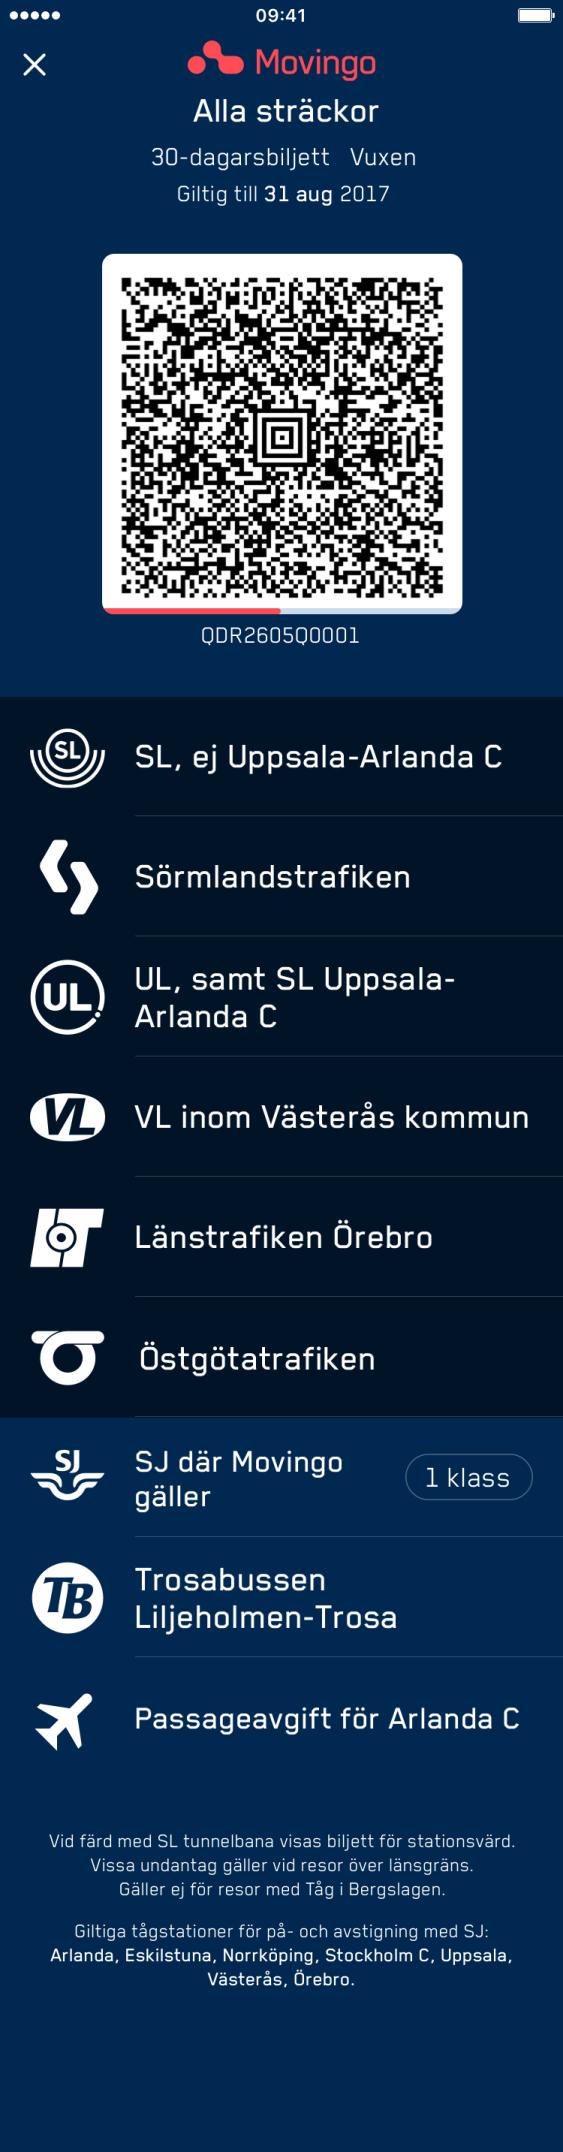 11(12) Movingo SJ app biljett Försäljningskanaler: SJ app, sj.se, SJ återförsäljare, SJ resebutik, SJ kundservice. Giltighetstid: 30-dagar, 90-dagar, Årsbiljett.